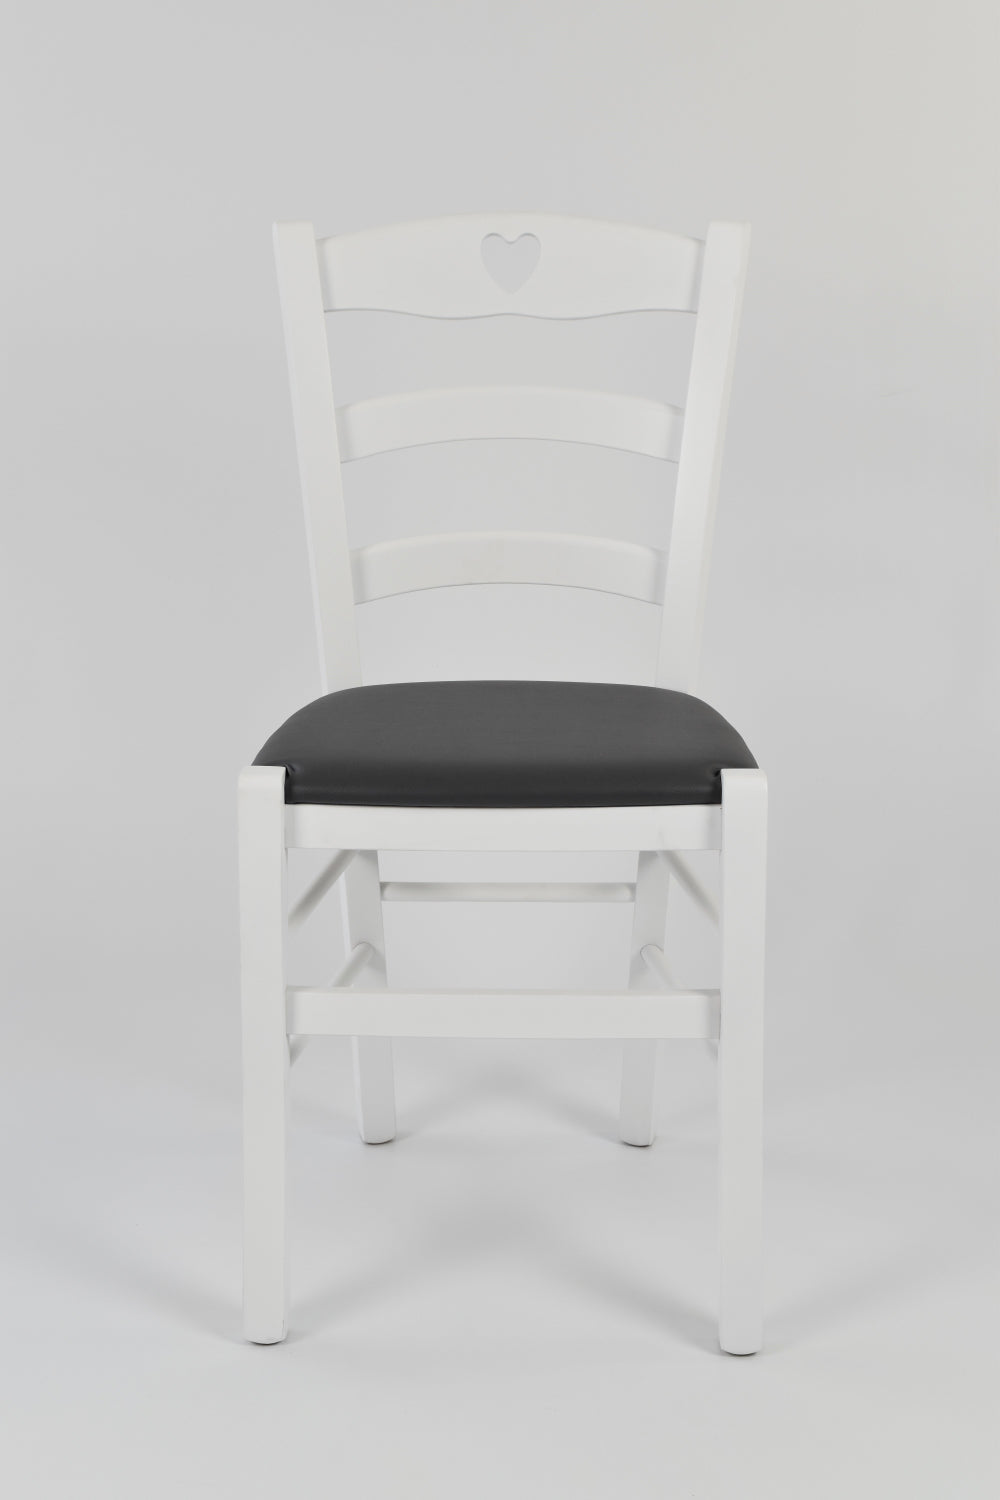 Tommychairs - Set 2 sillas de Cocina y Comedor Cuore, Estructura en Madera de Haya barnizada Color Blanco y Asiento tapizado en Polipiel Gris Oscuro